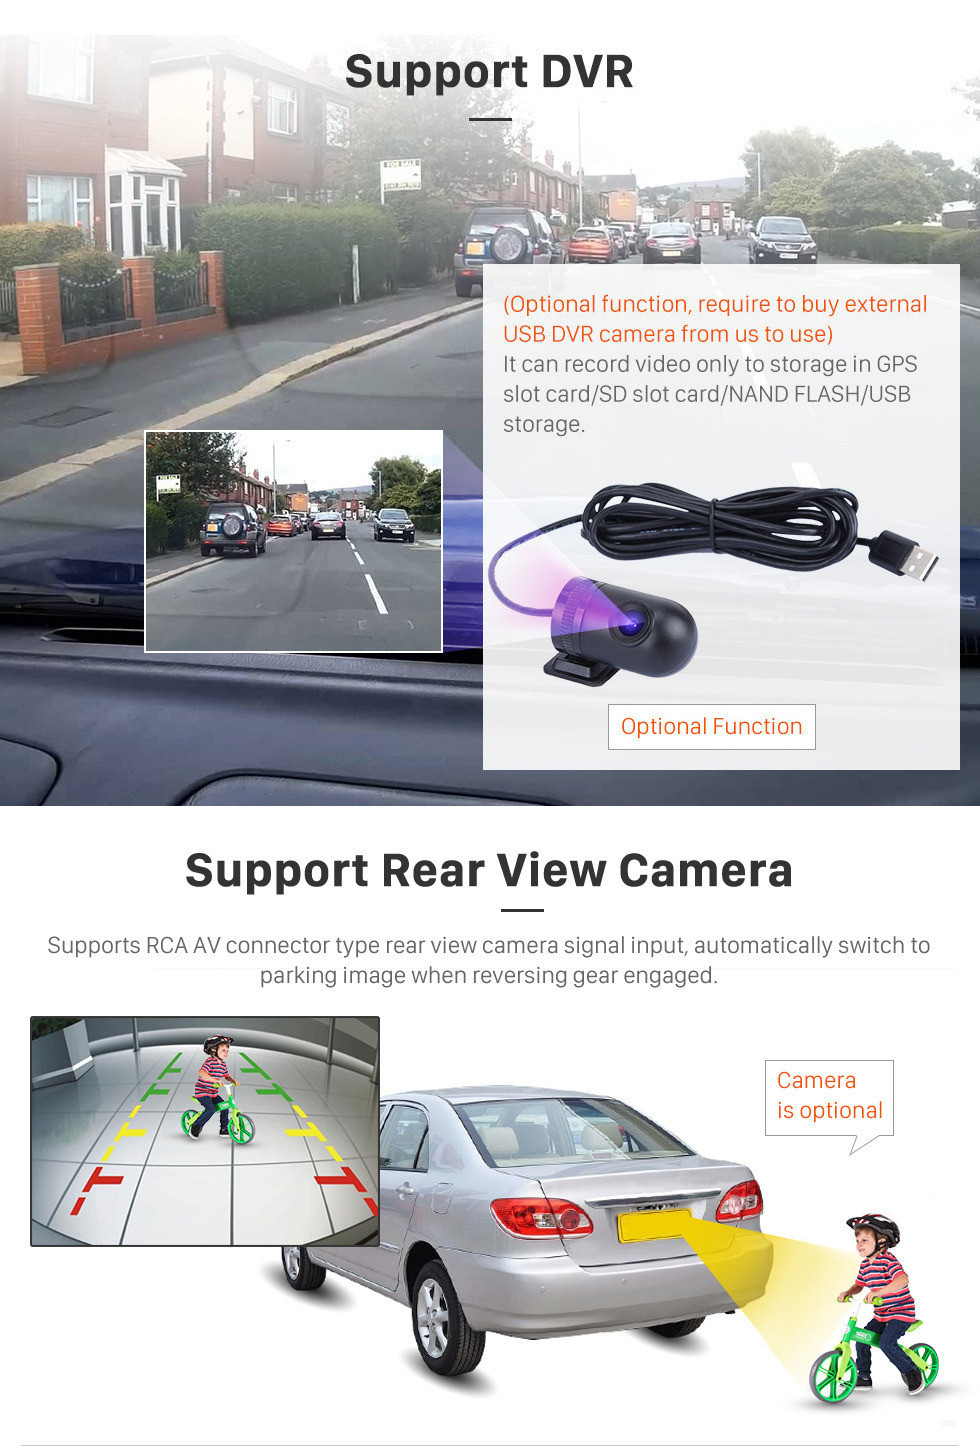 Seicane 9 pouces Android 11.0 Radio pour 2017-2019 Kia Rio avec la navigation GPS HD à écran tactile Bluetooth prise en charge AUX Carplay OBD2 caméra de recul 4G WIFI